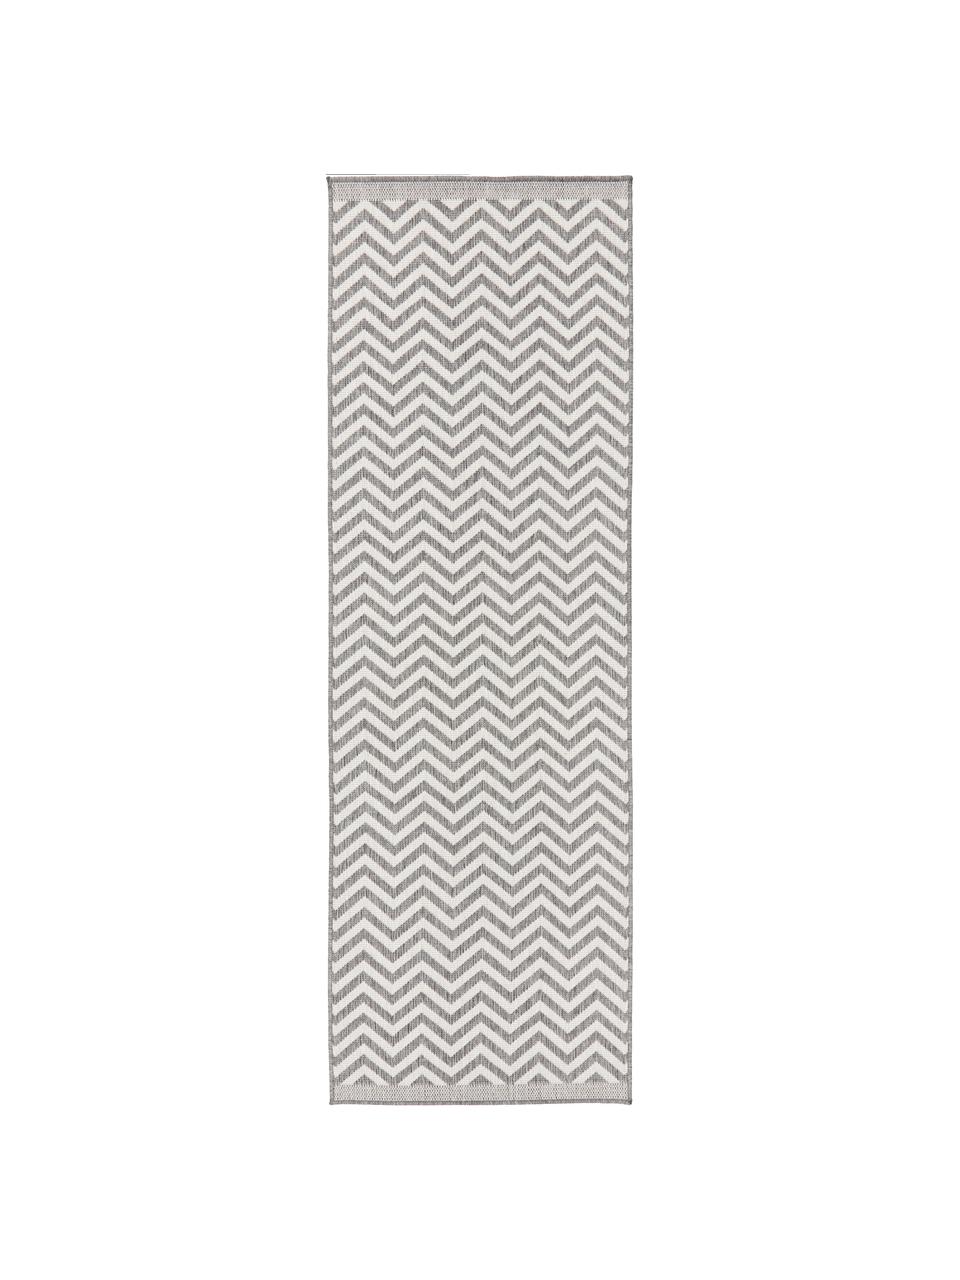 Dubbelzijdige in- & outdoor loper Palma, met zigzag patroon, 100% polypropyleen, Grijs, crèmekleurig, 80 x 250 cm